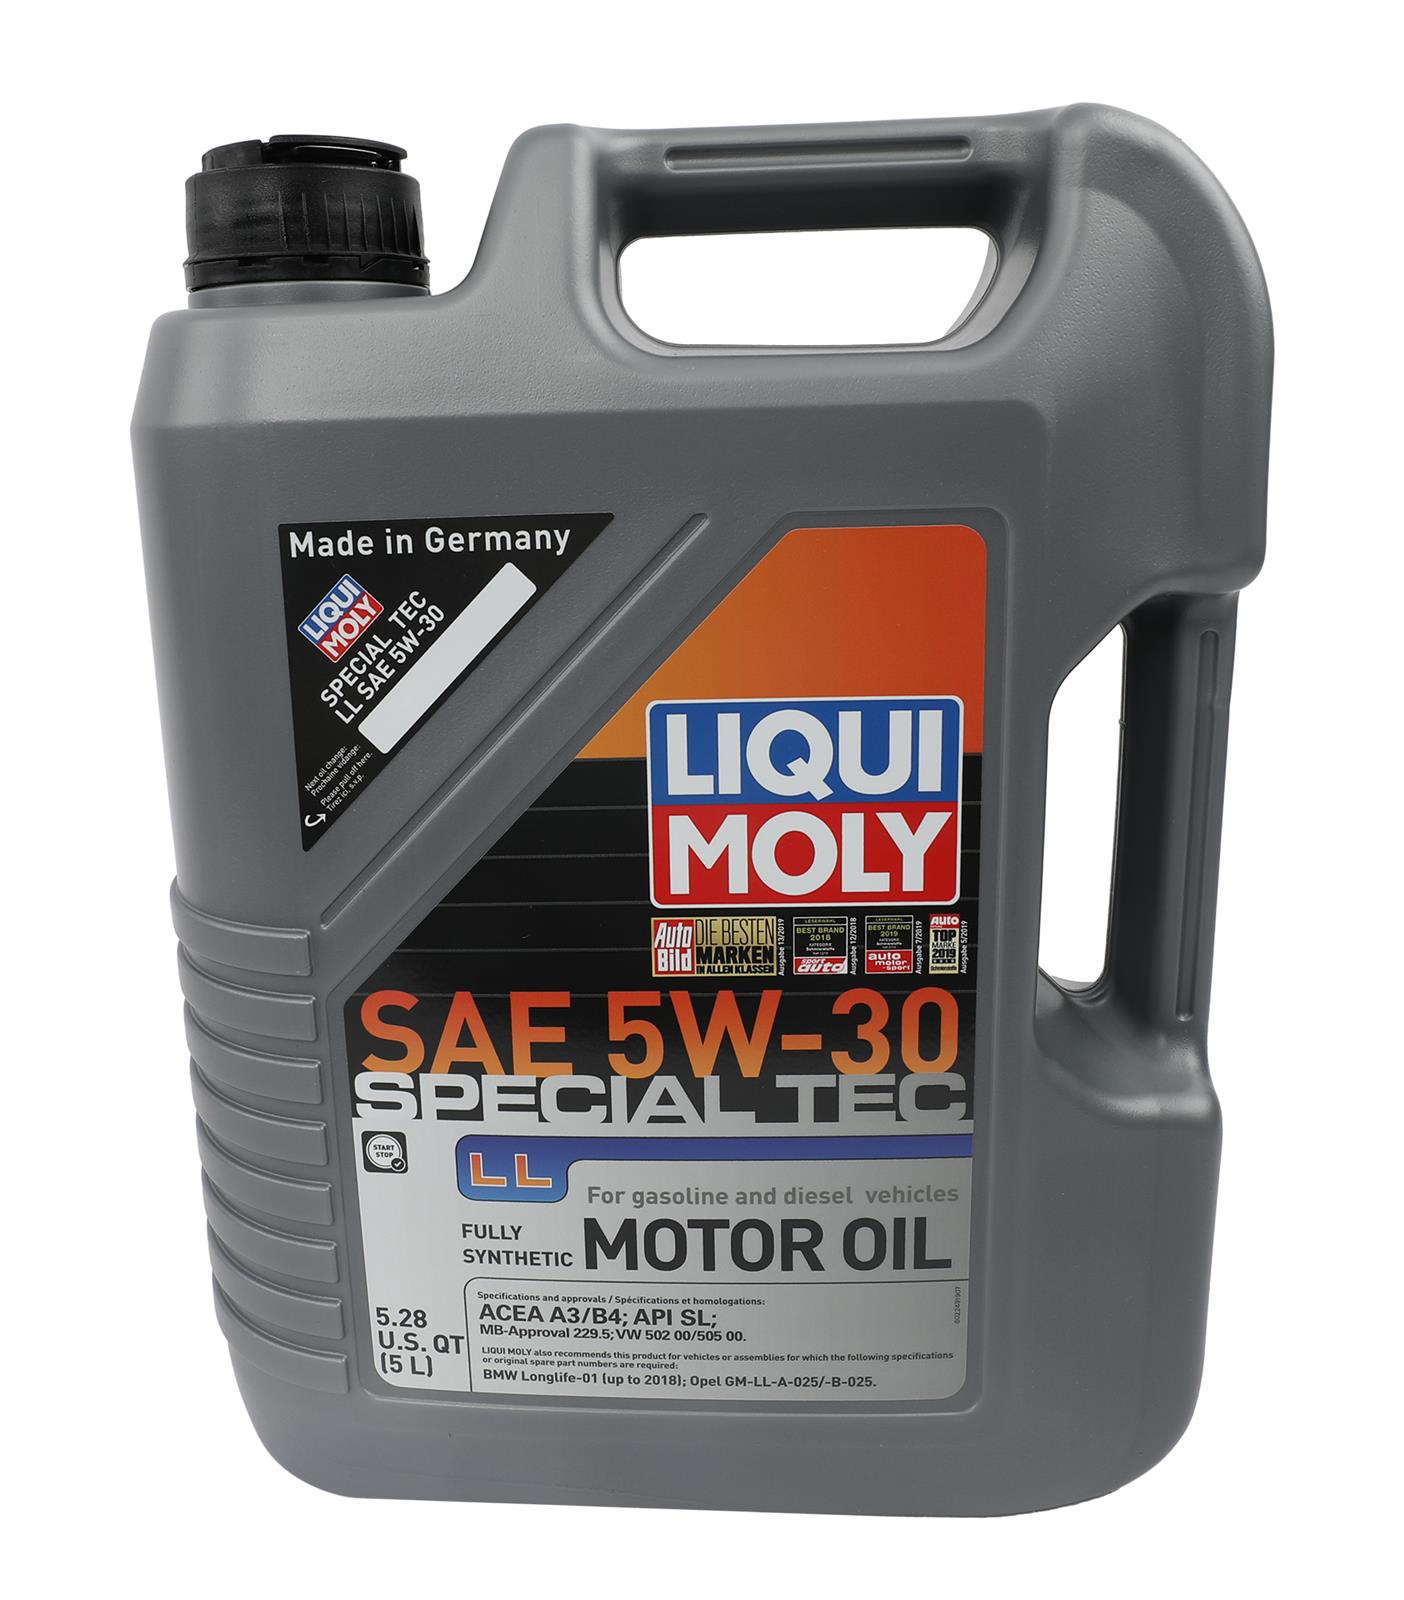 2249 - Liqui Moly Special Tec LL 5W-30 Motor Oil - 5 Liter